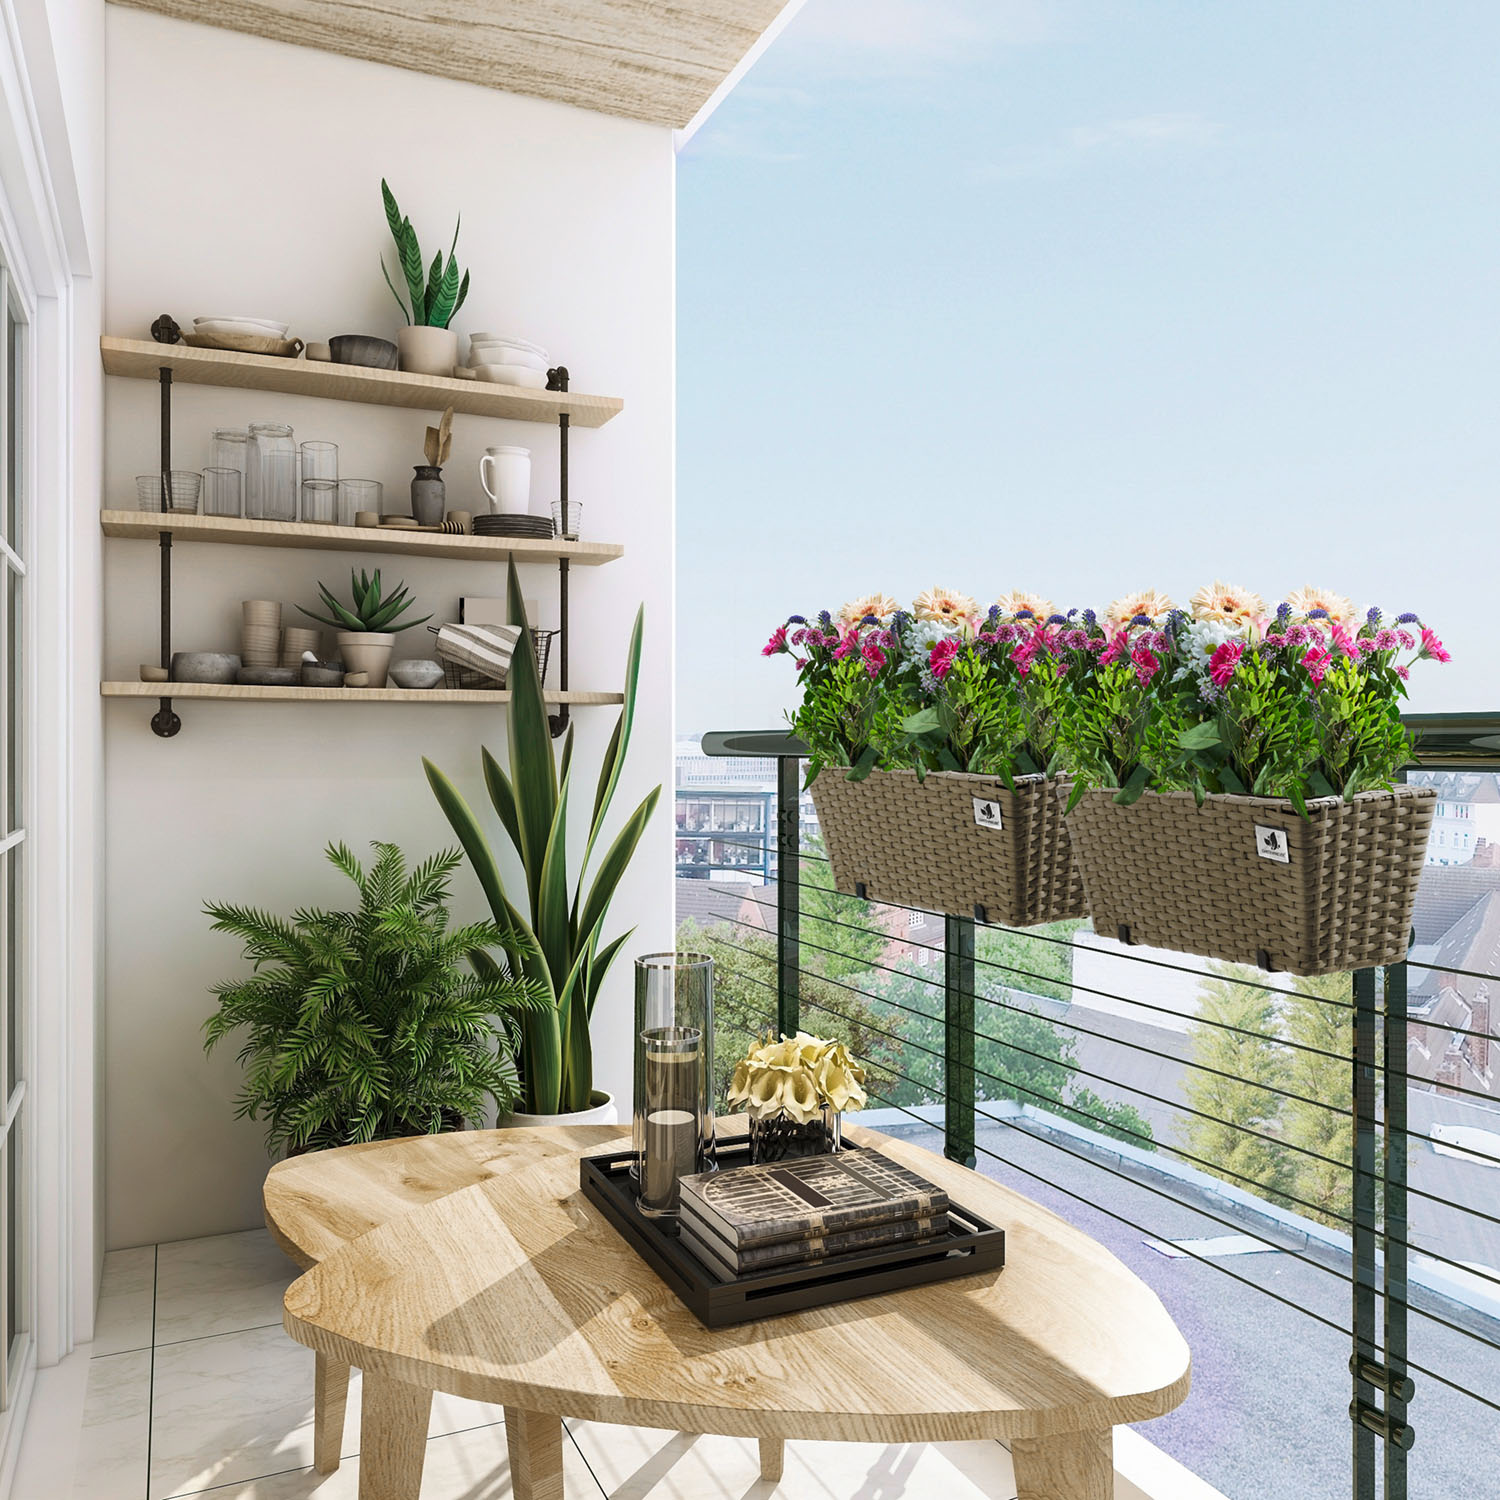 4-er Set Balkonkästen von der Gartenfreude Marke